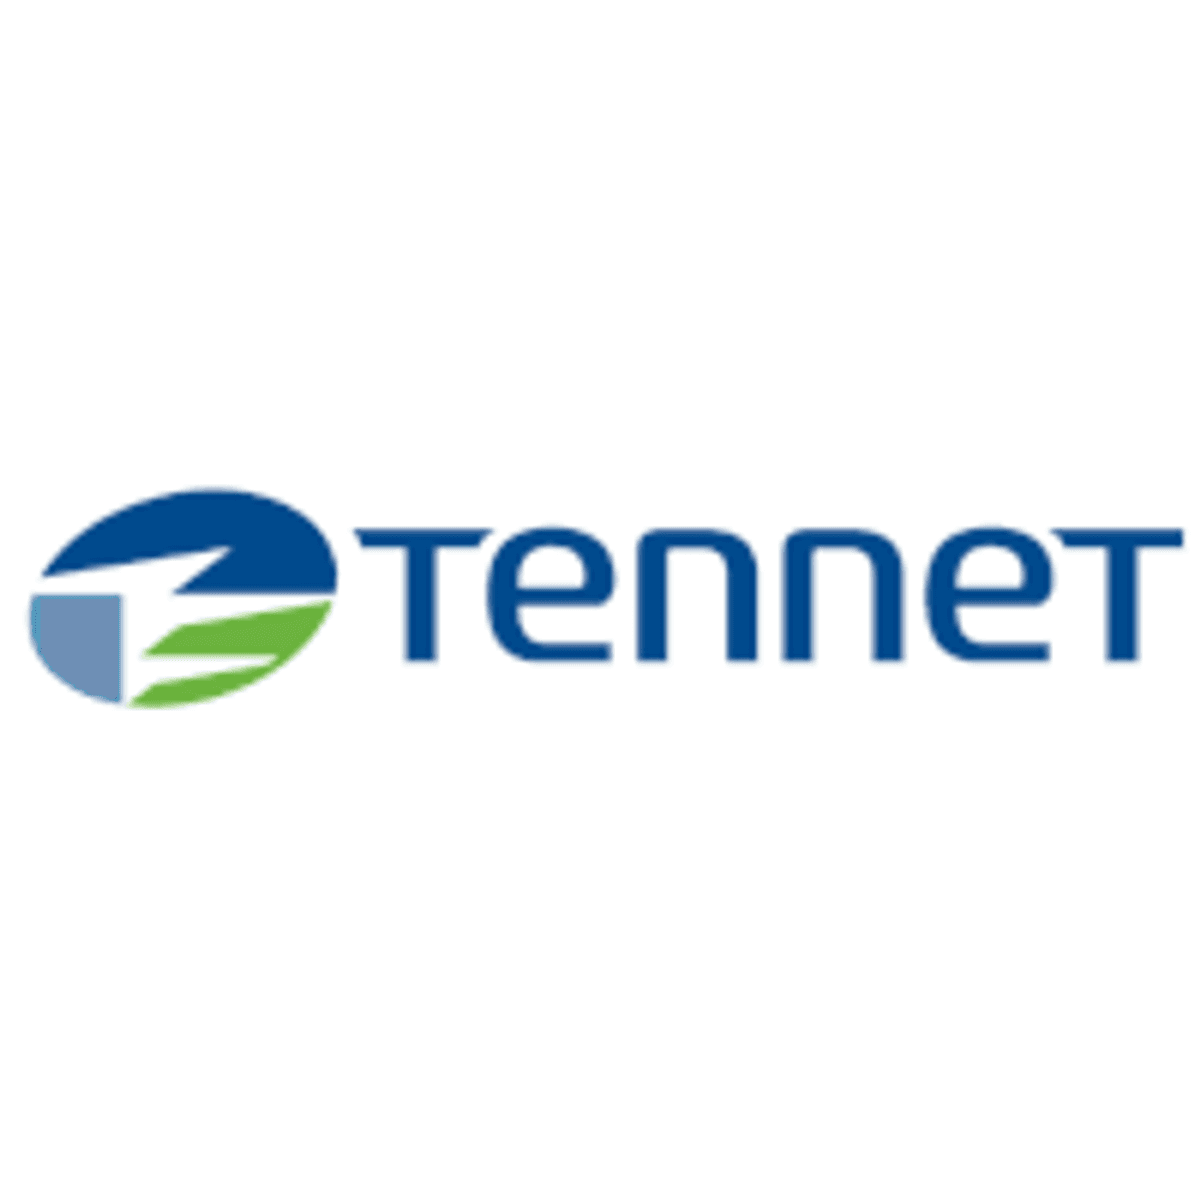 Onderzeese elektriciteitkabel Tennet uitgevallen door computerstoring image